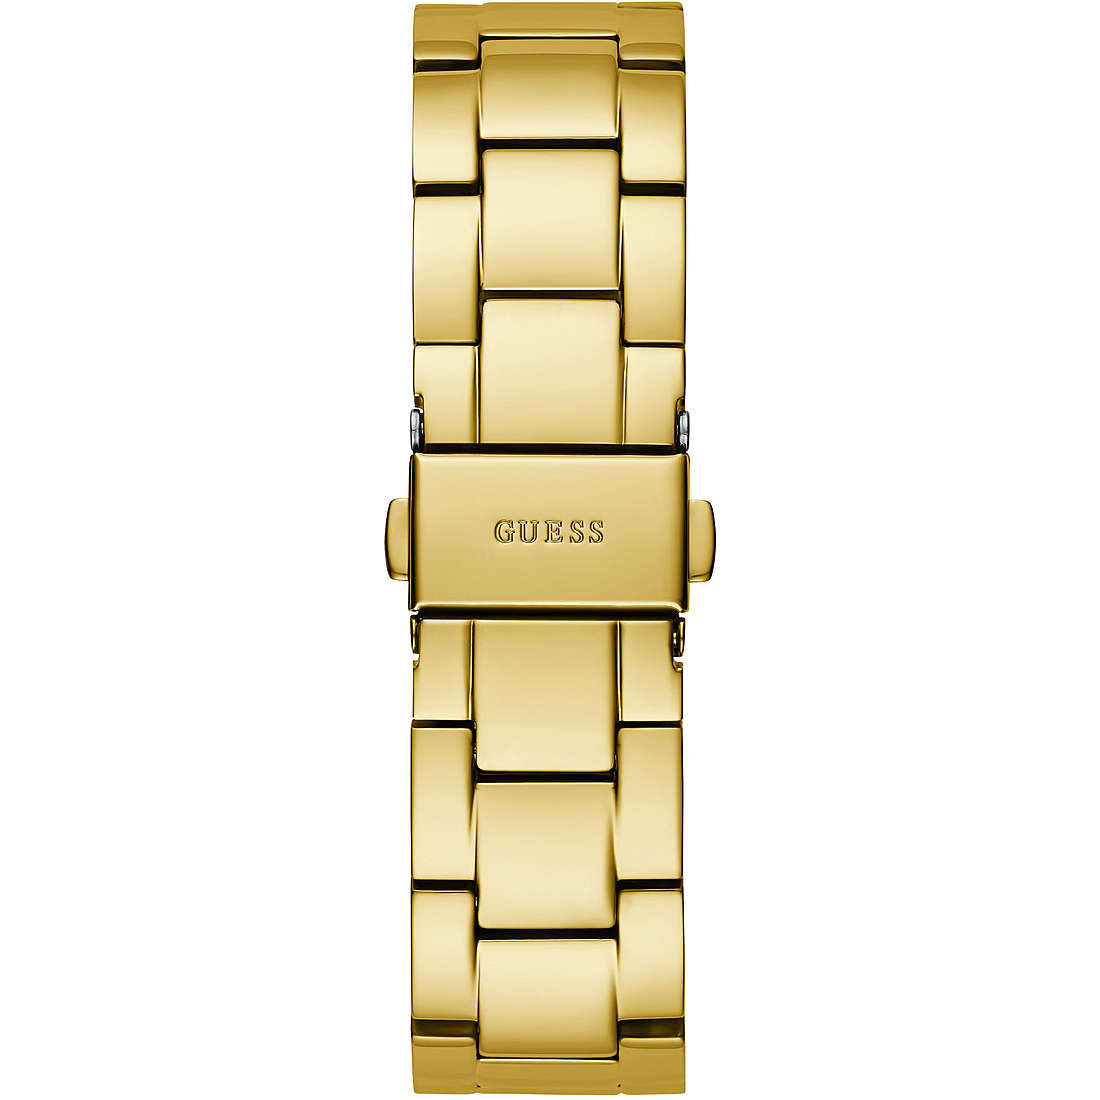 orologio solo tempo donna Guess Emblem GW0485L1